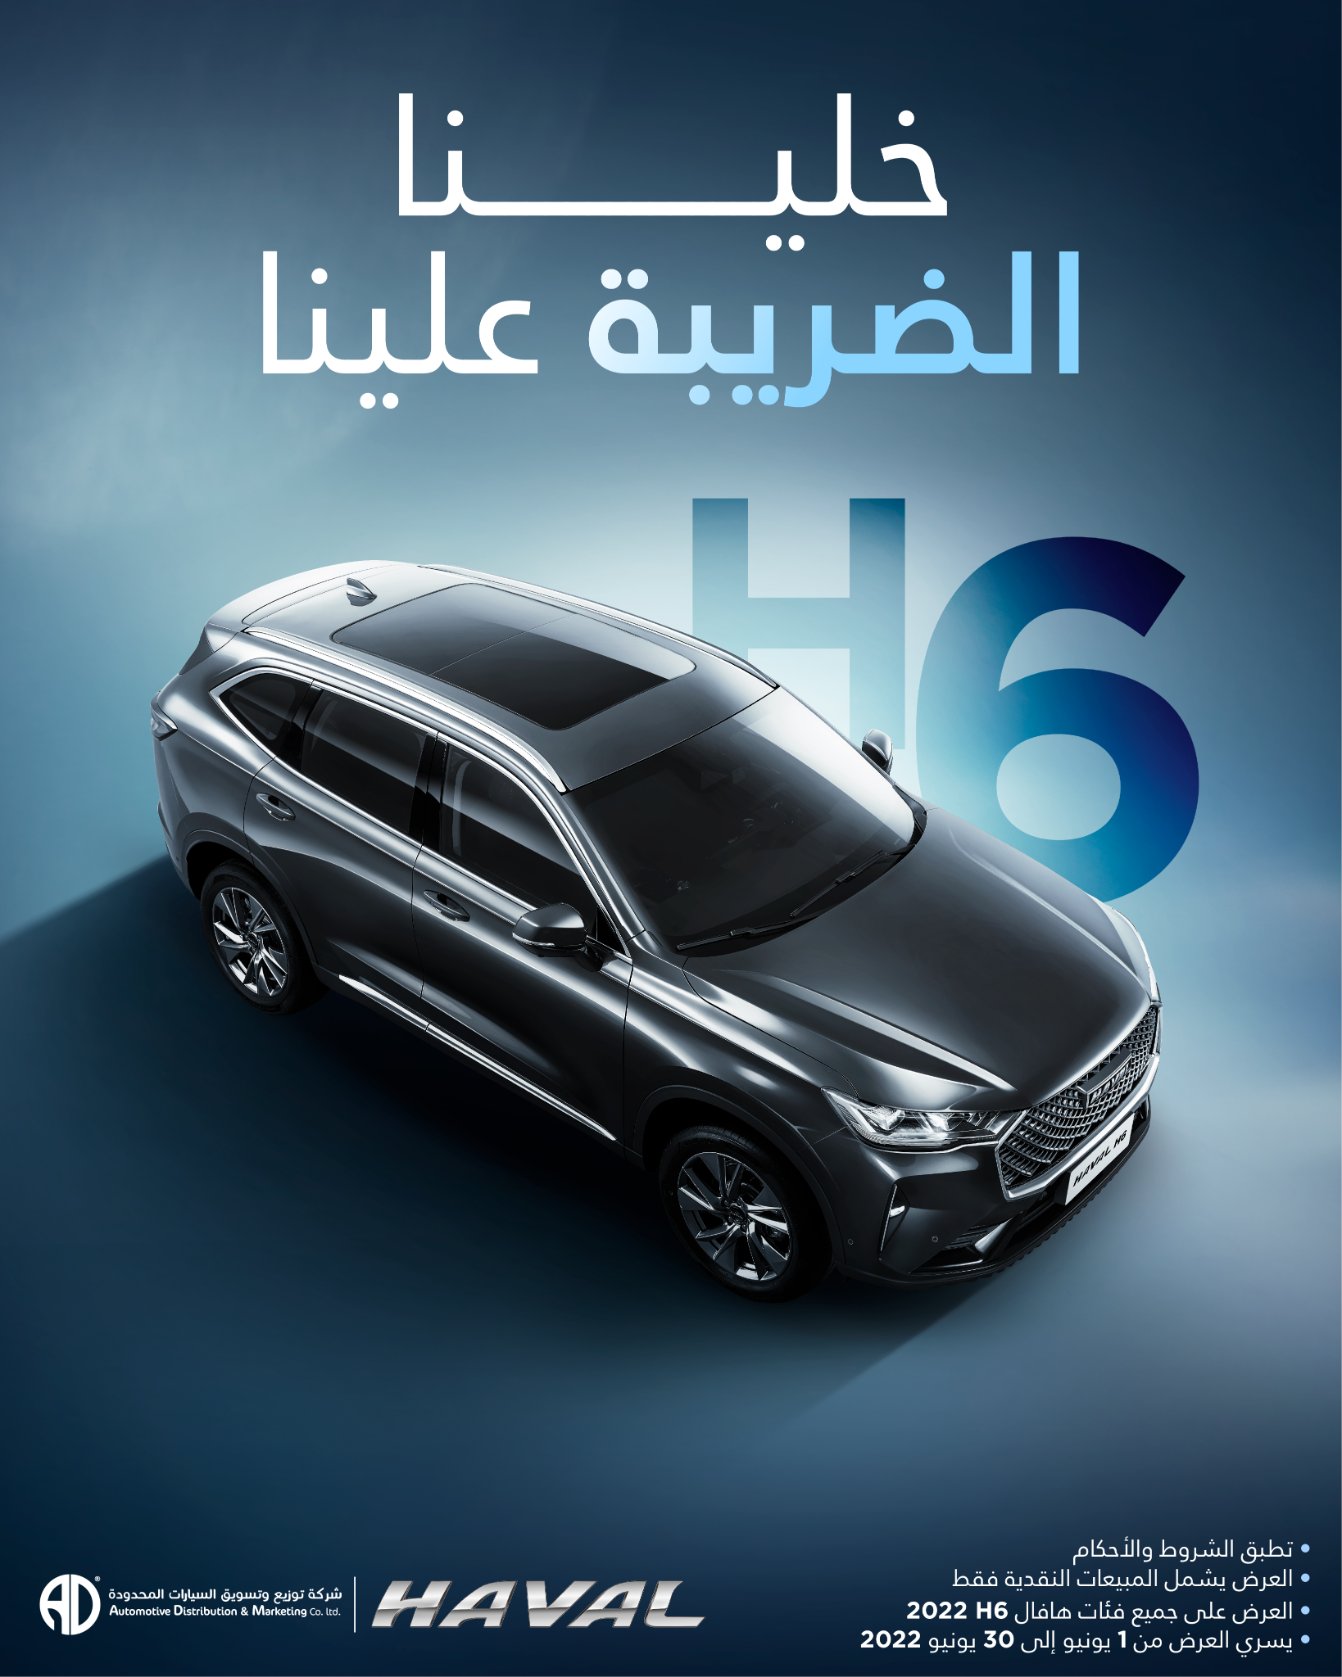 حرق محطة تلفاز تكوم  عرضان خلال يونيو على سيارات هافال في السعودية - السيارات الموقع العربي  الأول للسيارات